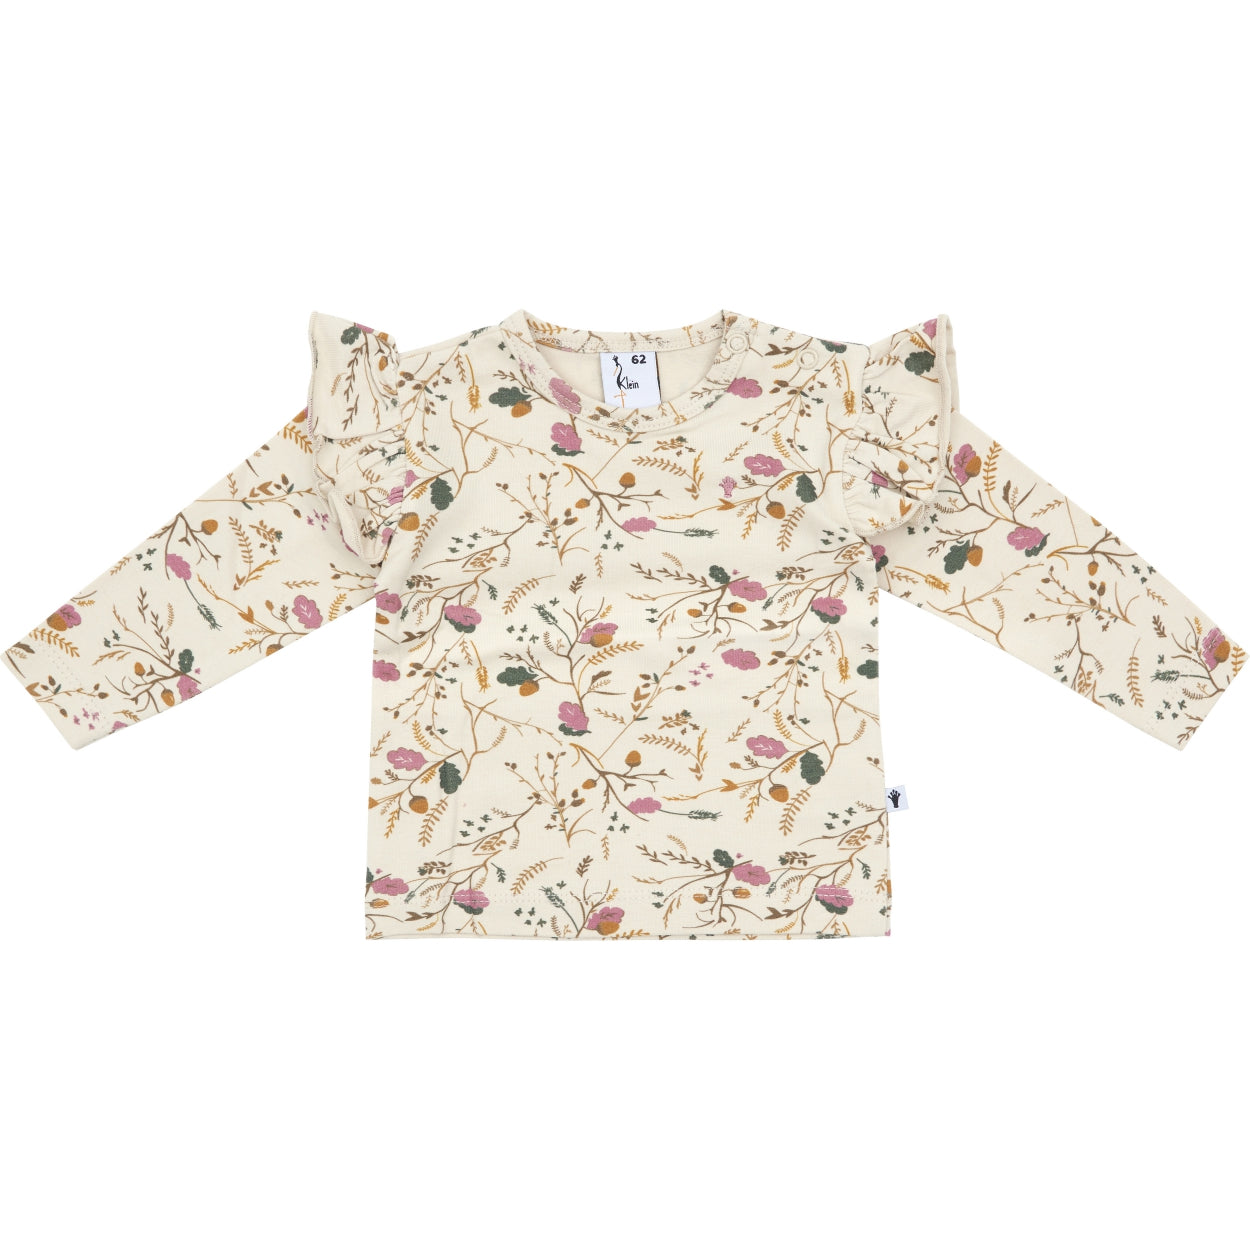 Meisjes Shirt Ruffle van Klein Baby in de kleur AOP Flower/Acorn in maat 74.